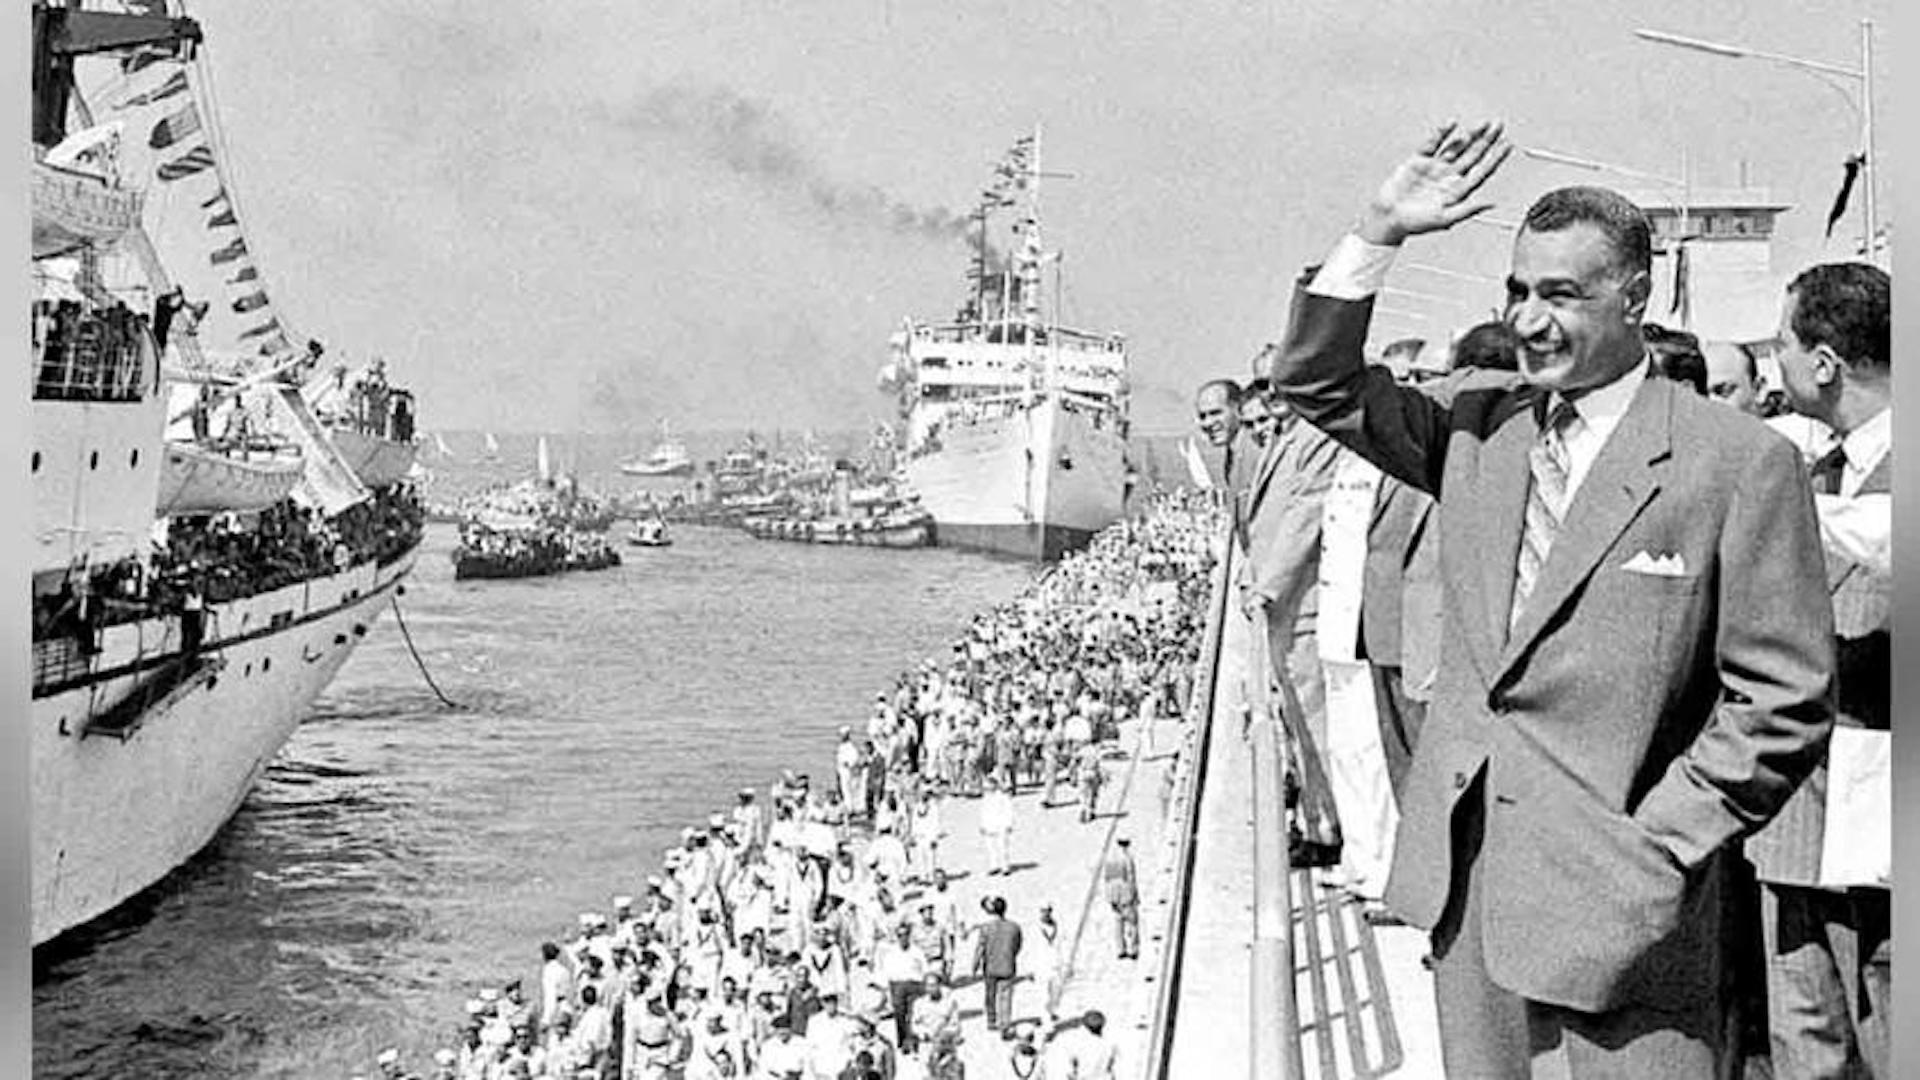 عبد الناصر في ذكرى يونيو 67 والتحدي ضد الإخوان: إرادة قوية لقيادة مصر نحو الاستقرار